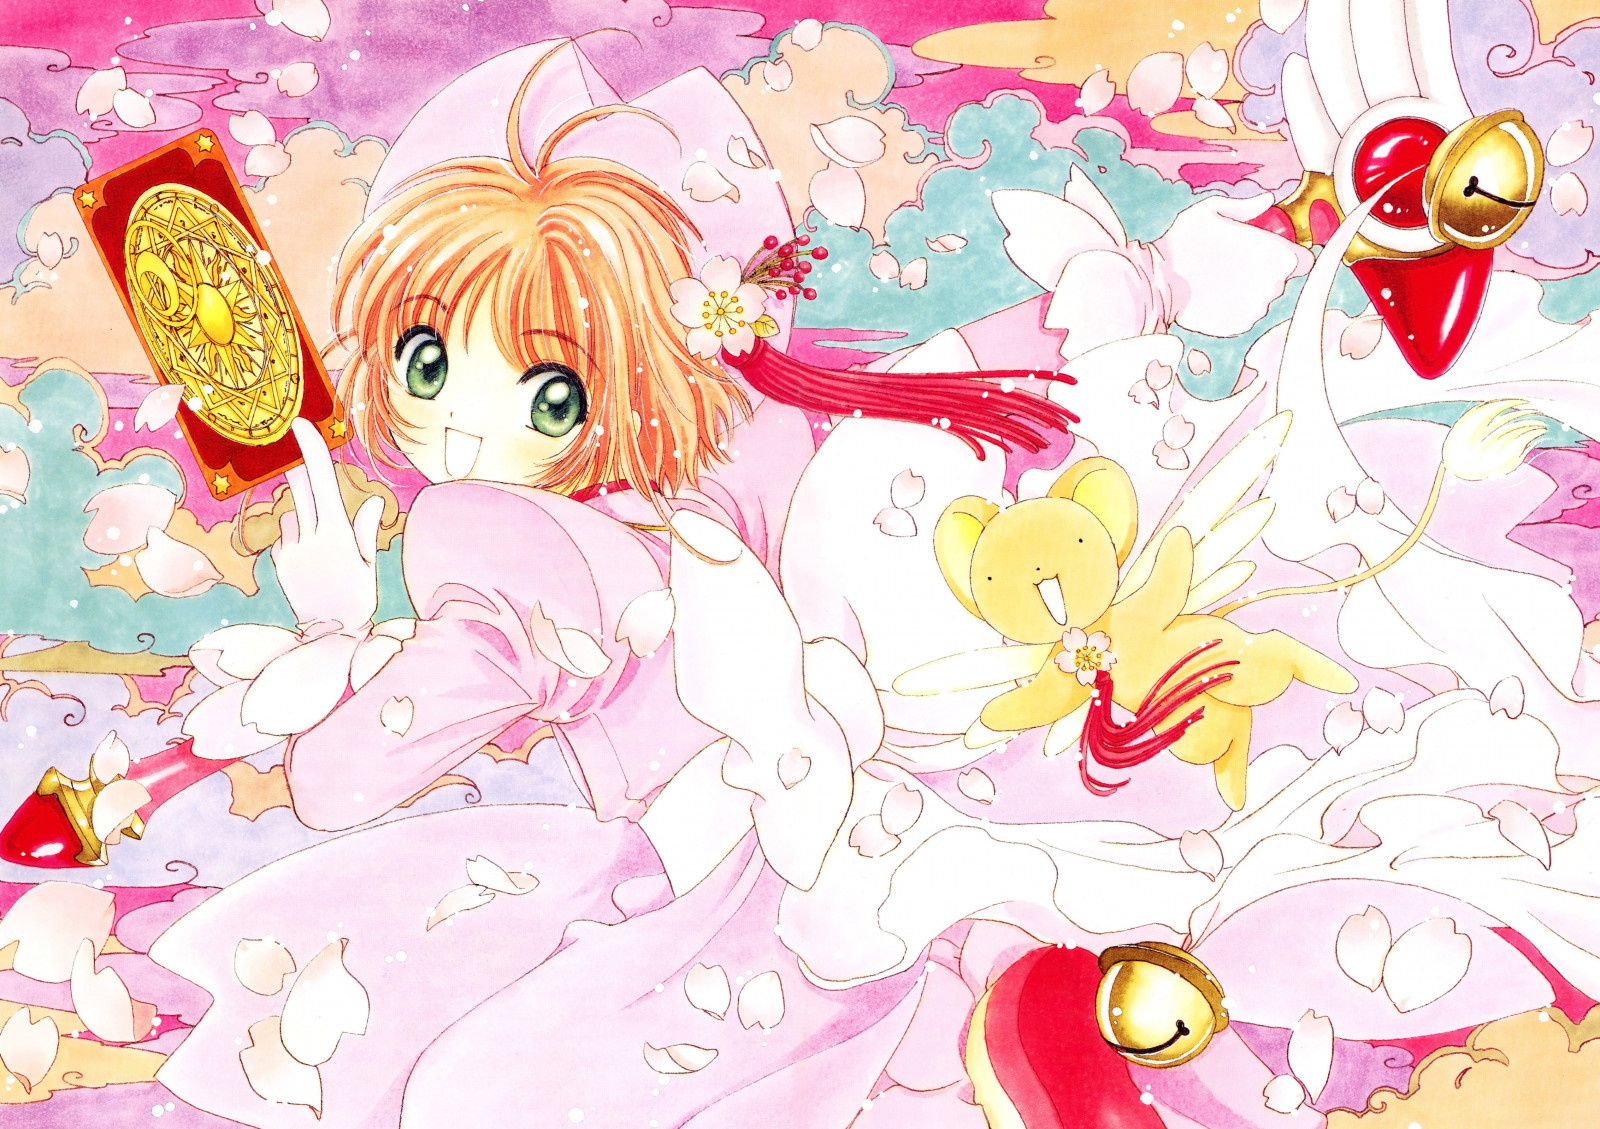 Bộ sưu tập hình ảnh đẹp nhất về Sakura - Nữ Hoàng Thẻ Bài